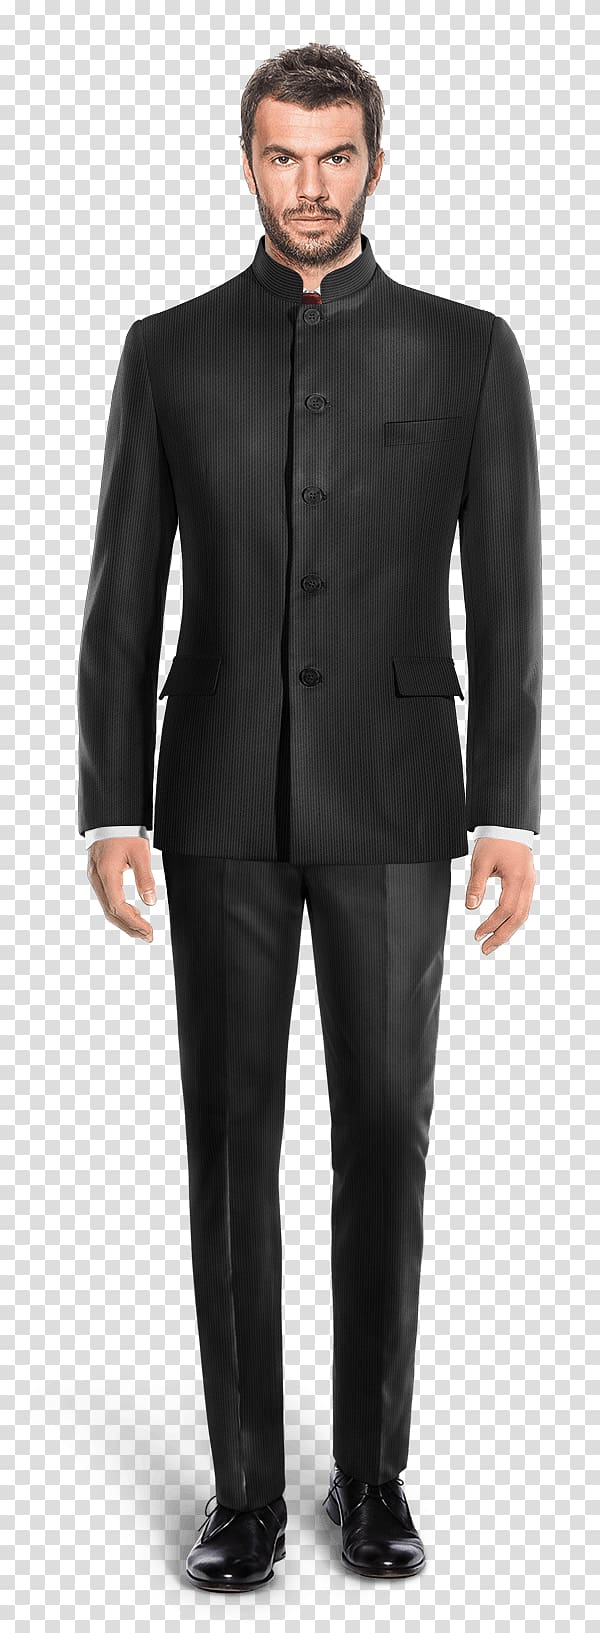 Suit Tuxedo Clothing Black tie Pants, mens suit transparent background PNG clipart